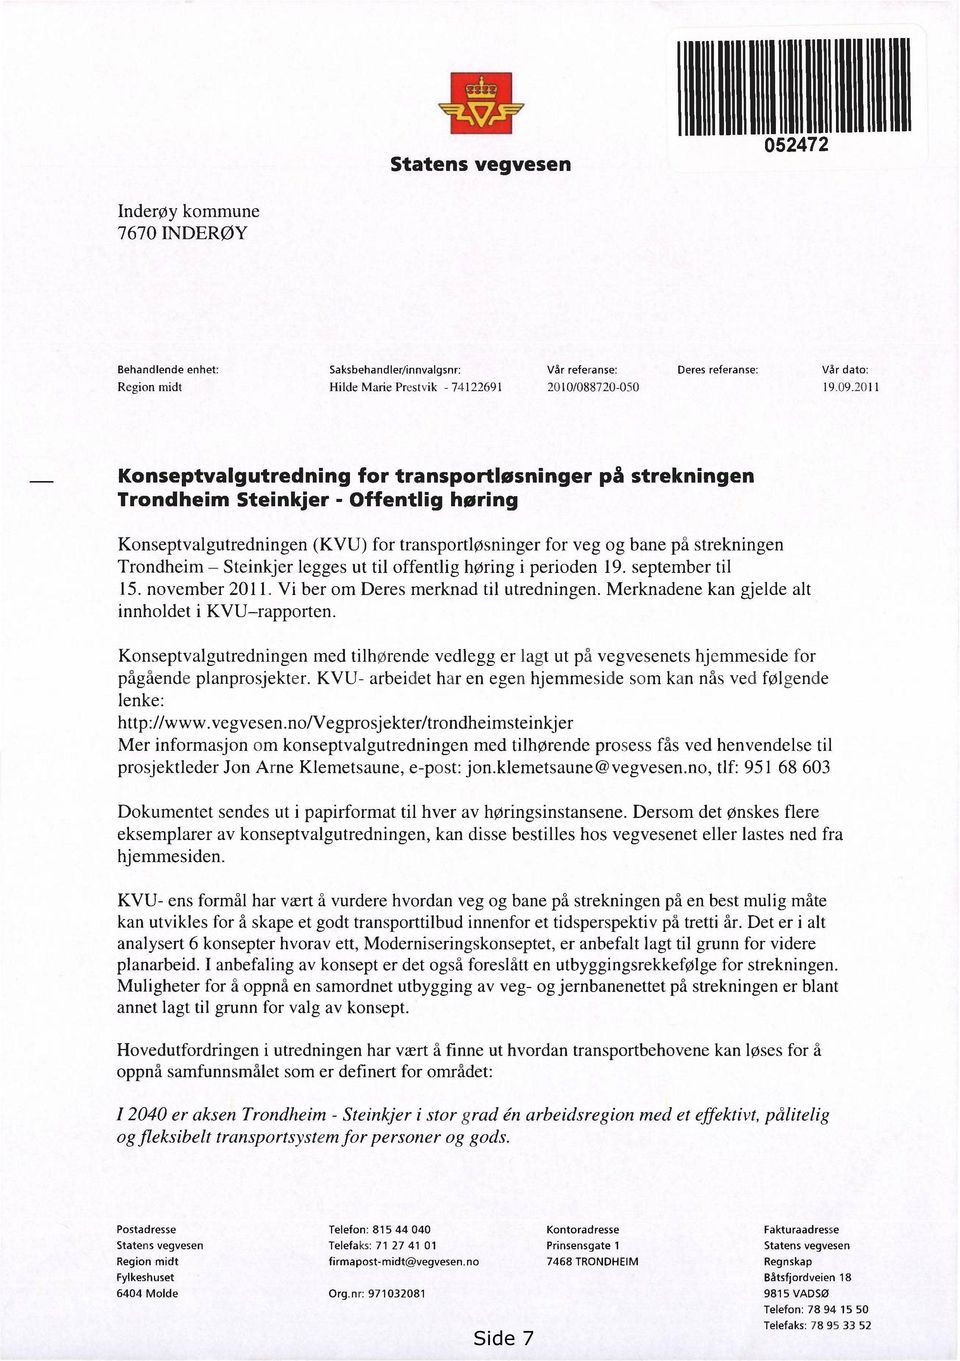 2011 på strekningen Konseptvalgutredningen (KVU) for transportløsninger for veg og bane på strekningen Trondheim Steinkjer legges ut til offentlig høring i perioden 19. september til 15.